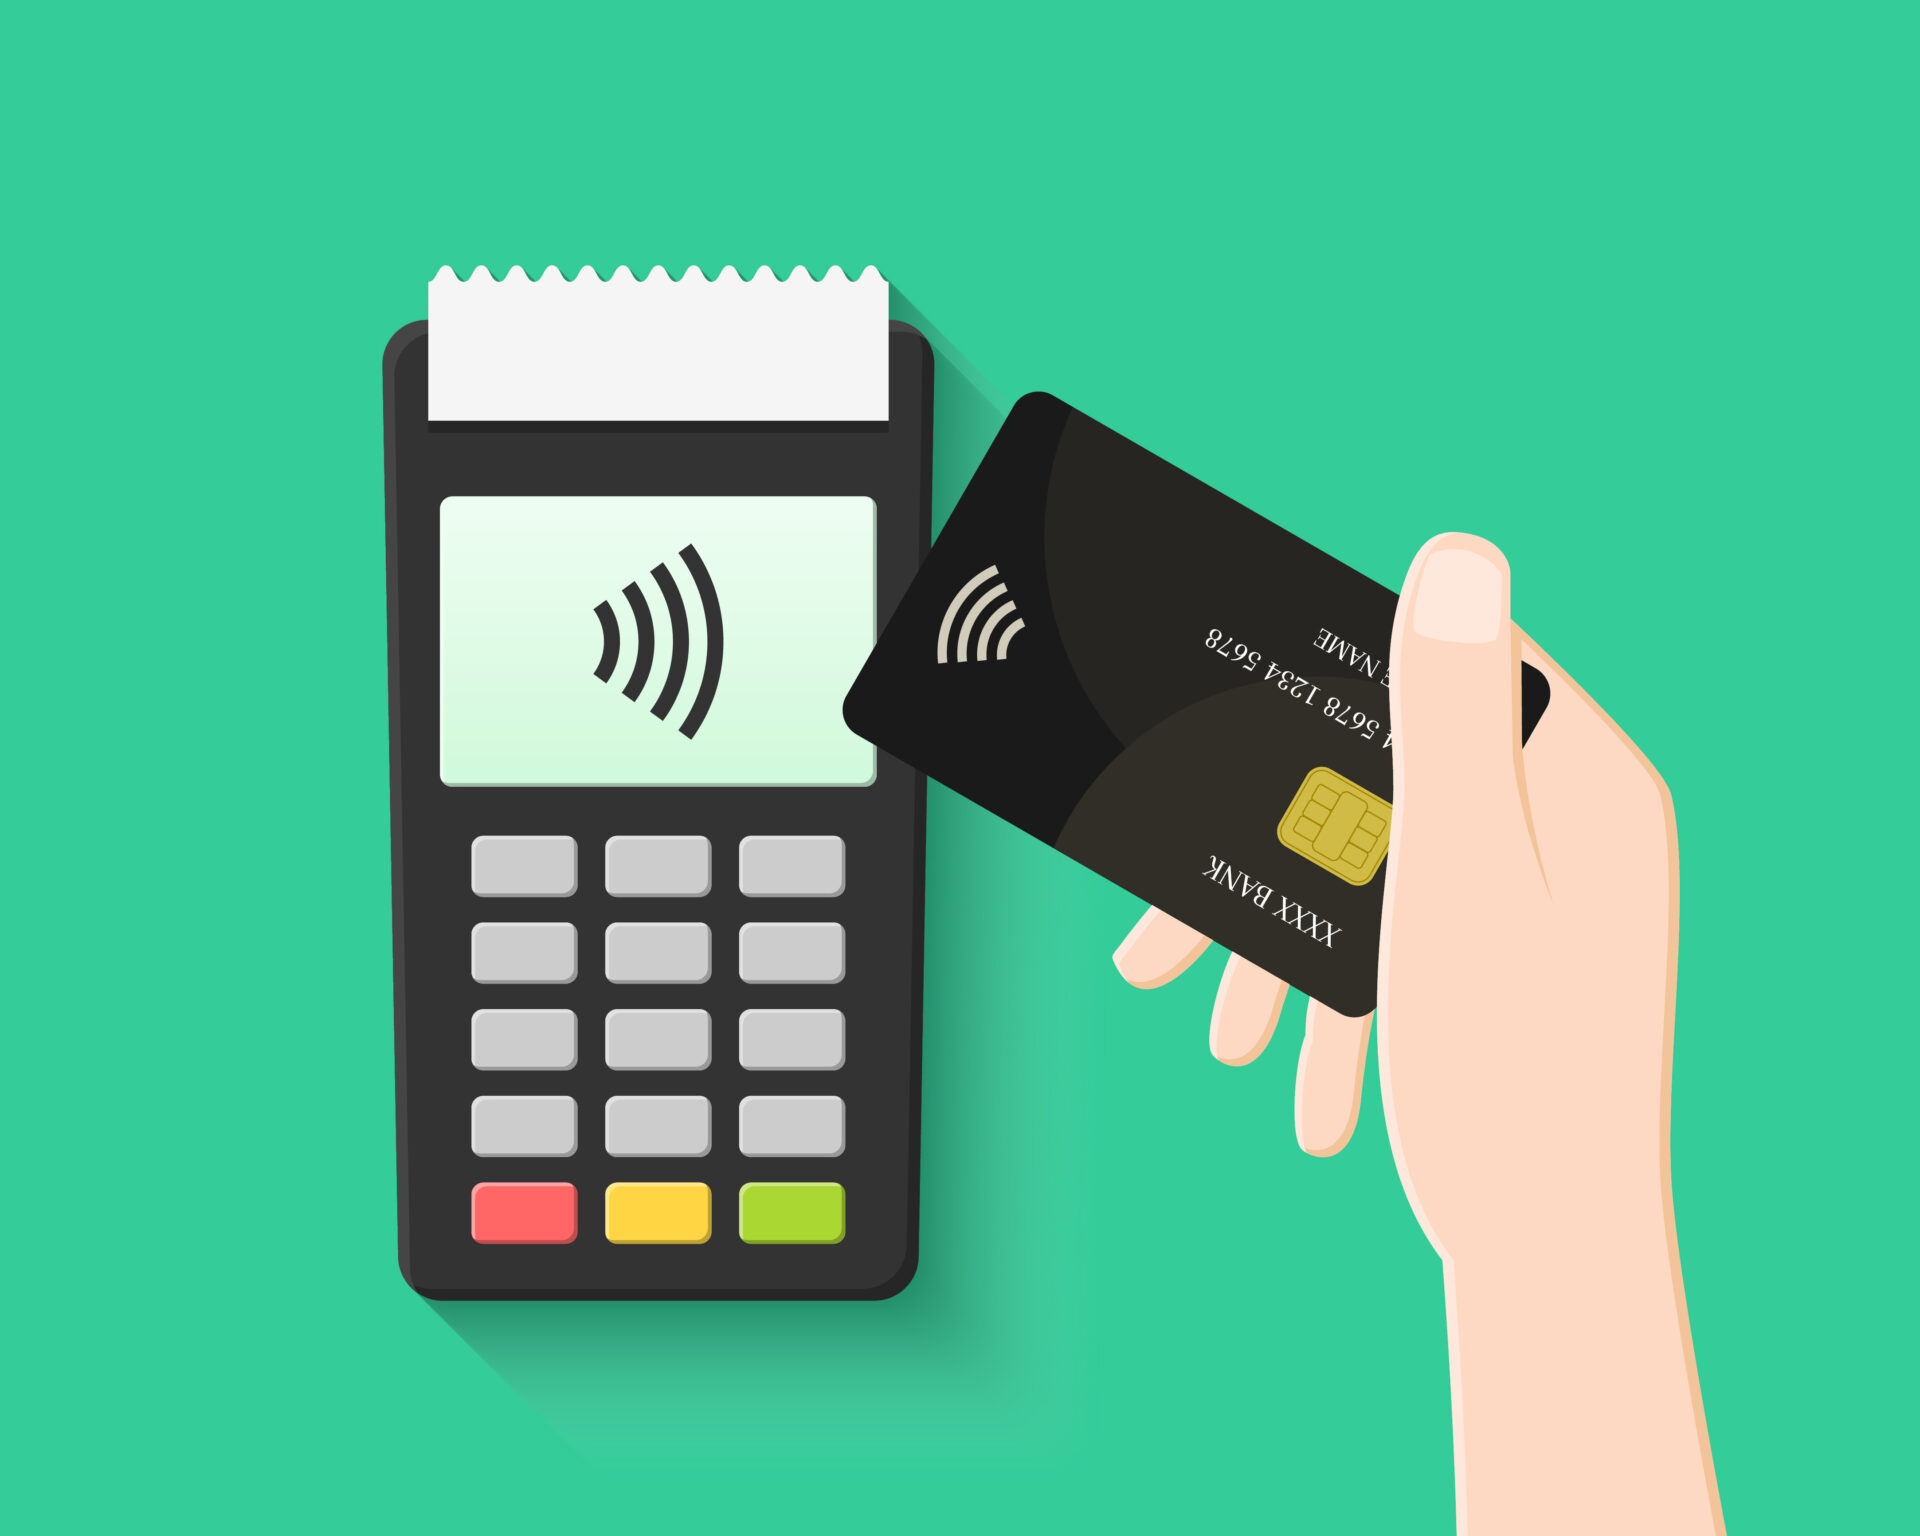 Quel terminal de paiement choisir pour encaisser les cartes bancaires ?